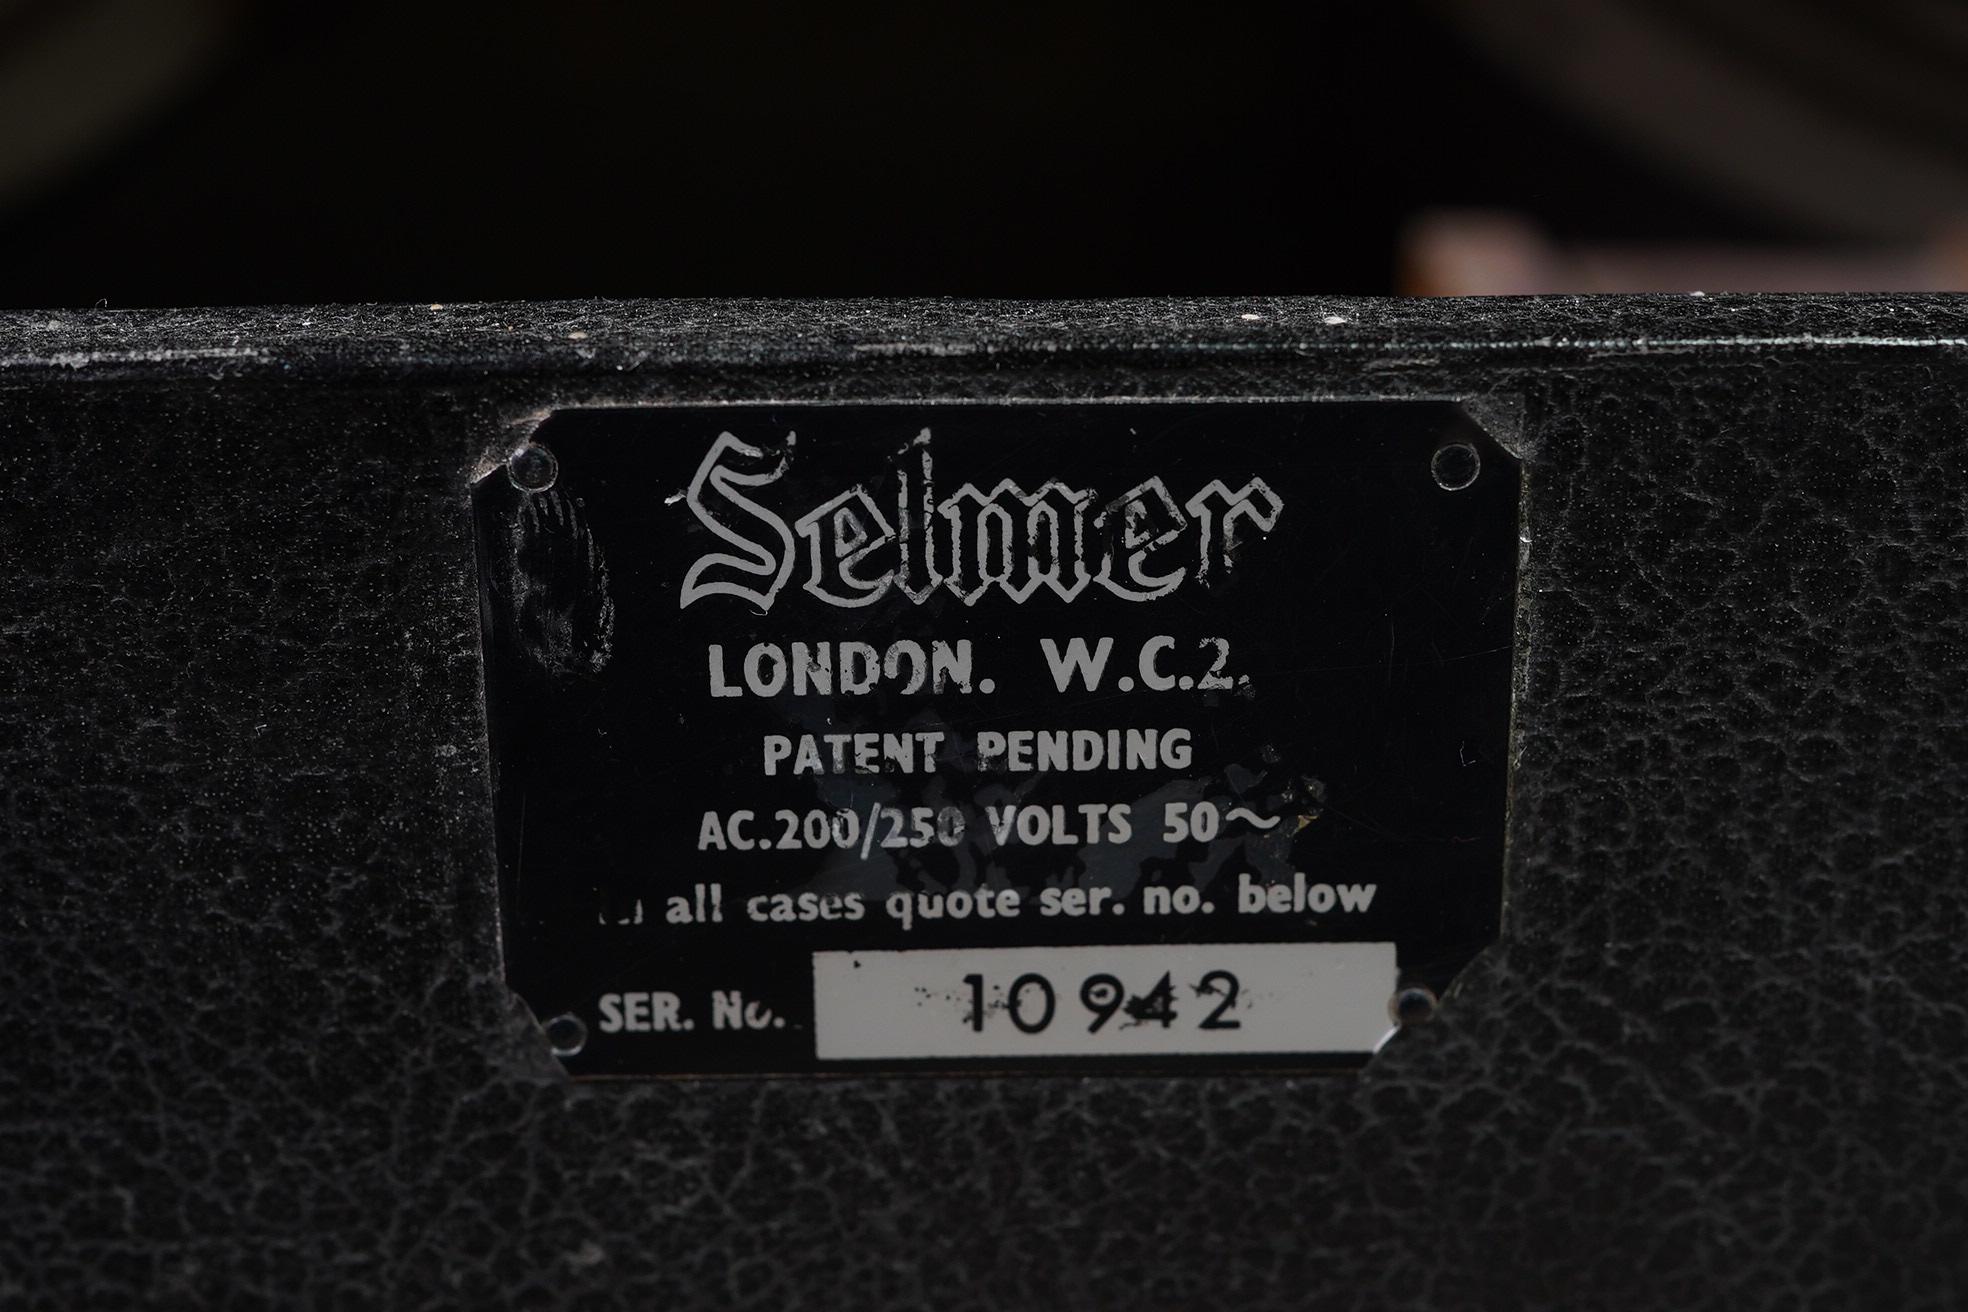 1963 Selmer Truvoice Zodiac Twin 30 Amplifier